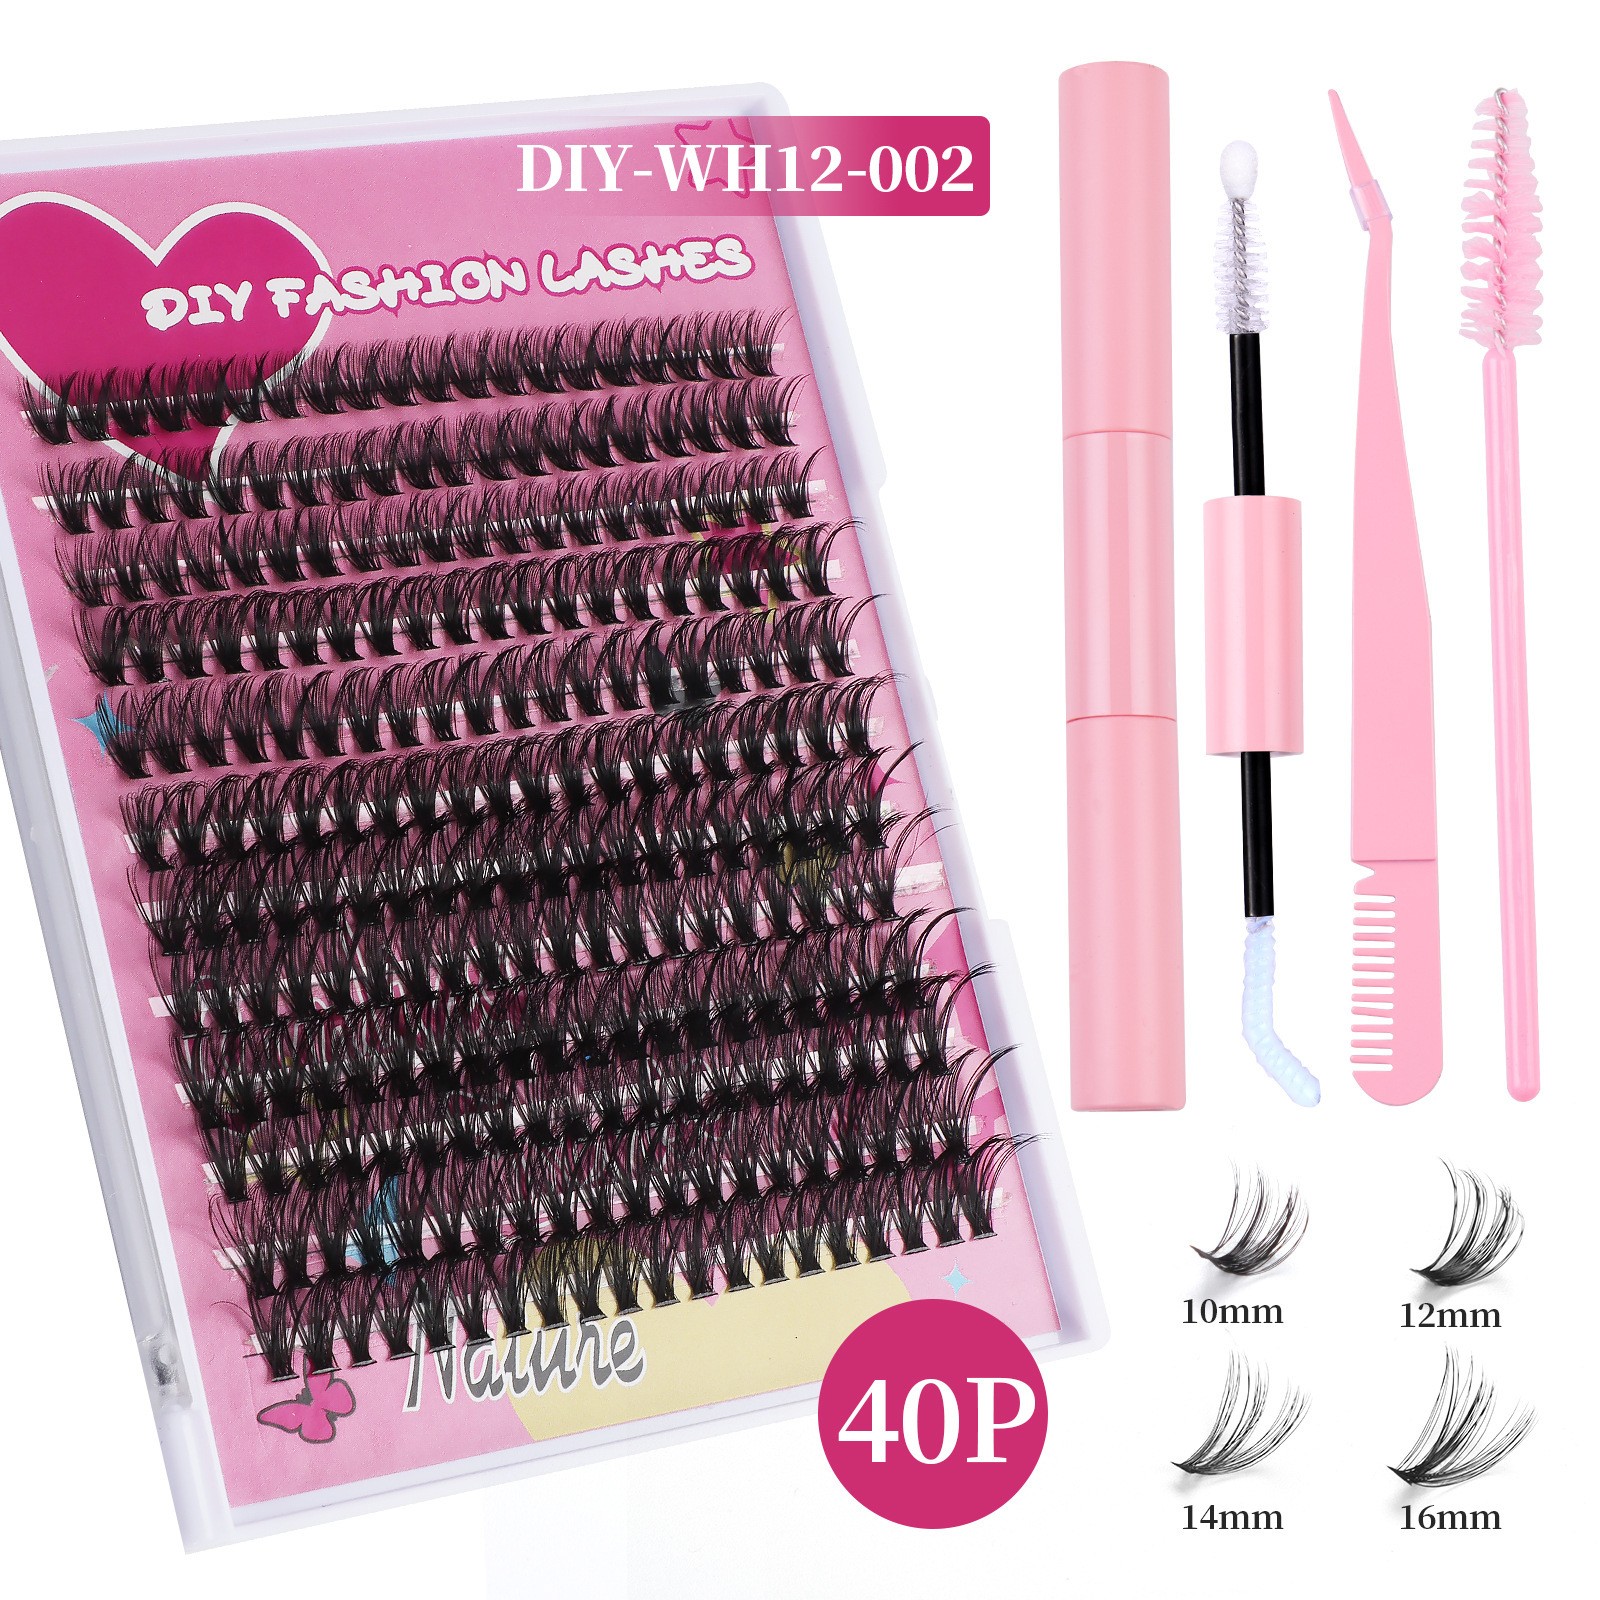 DIY-WH12-002  Pink set